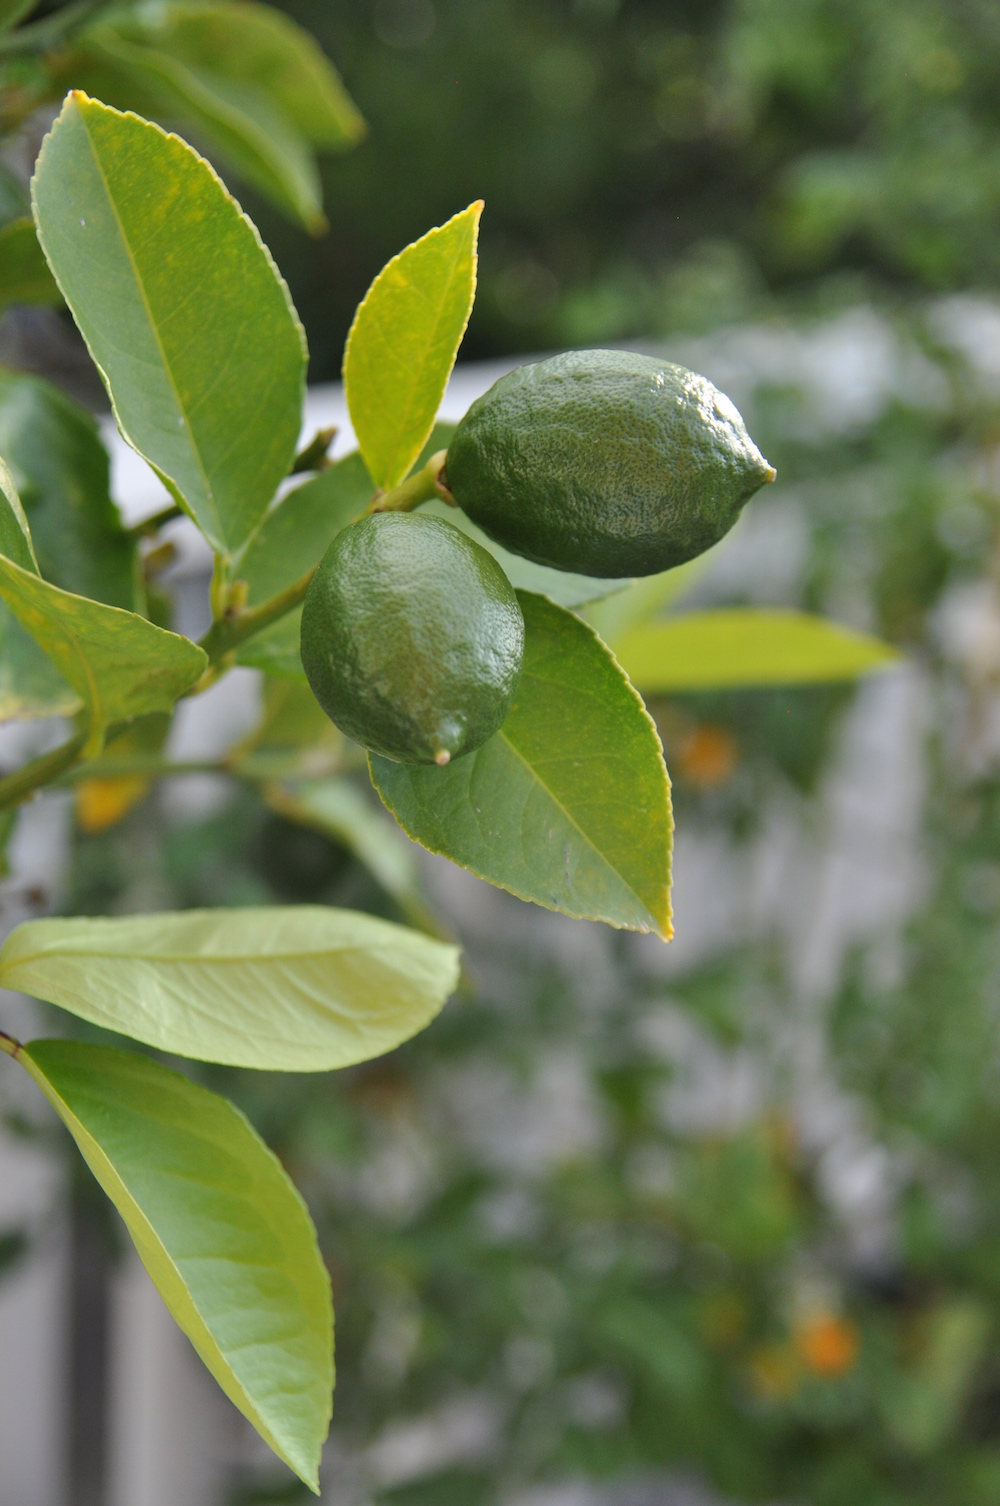 edible container garden - lemons